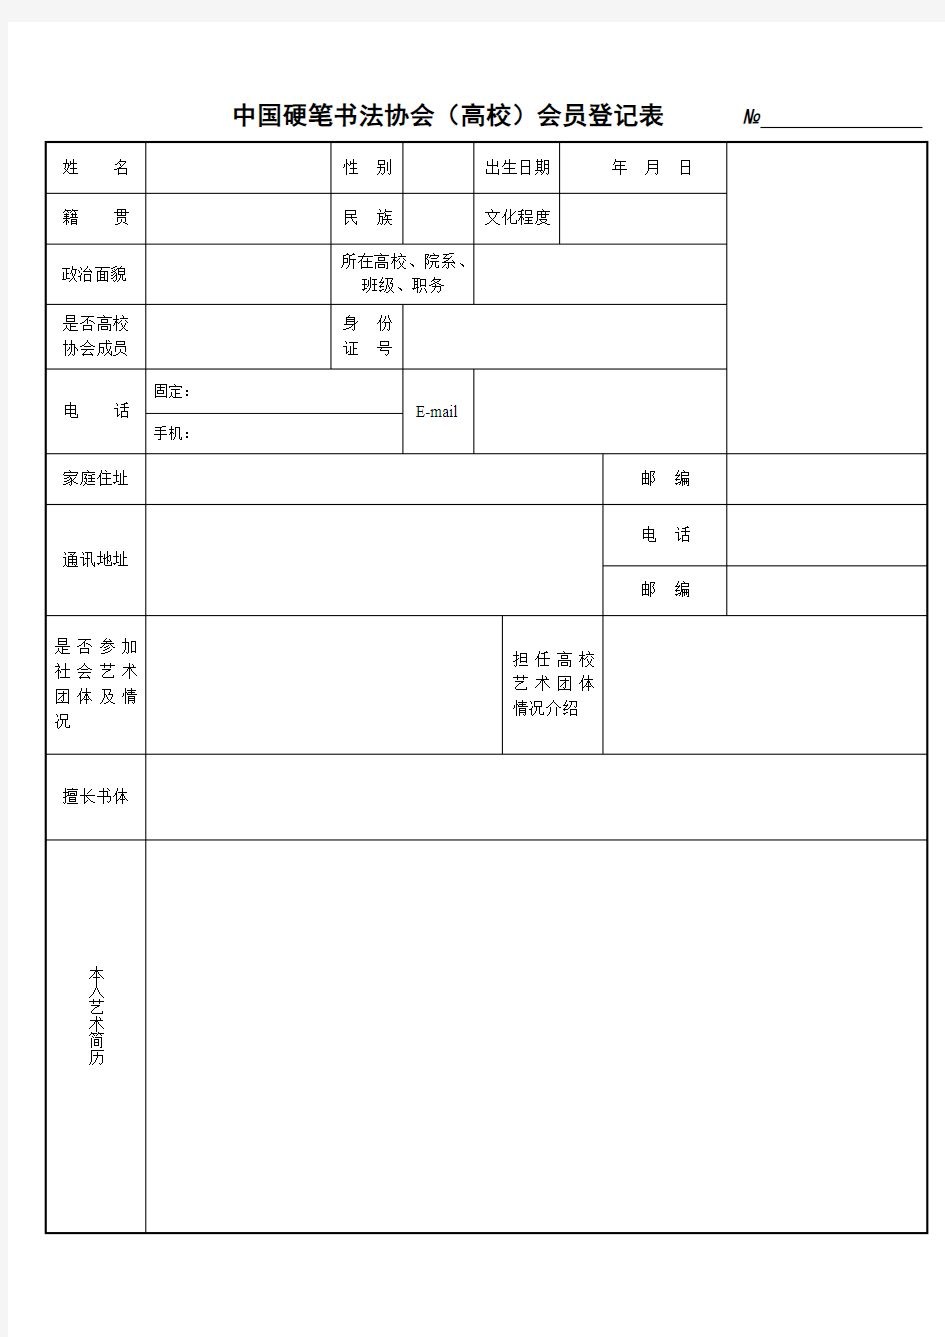 中国硬笔书法协会(高校)会员申请表